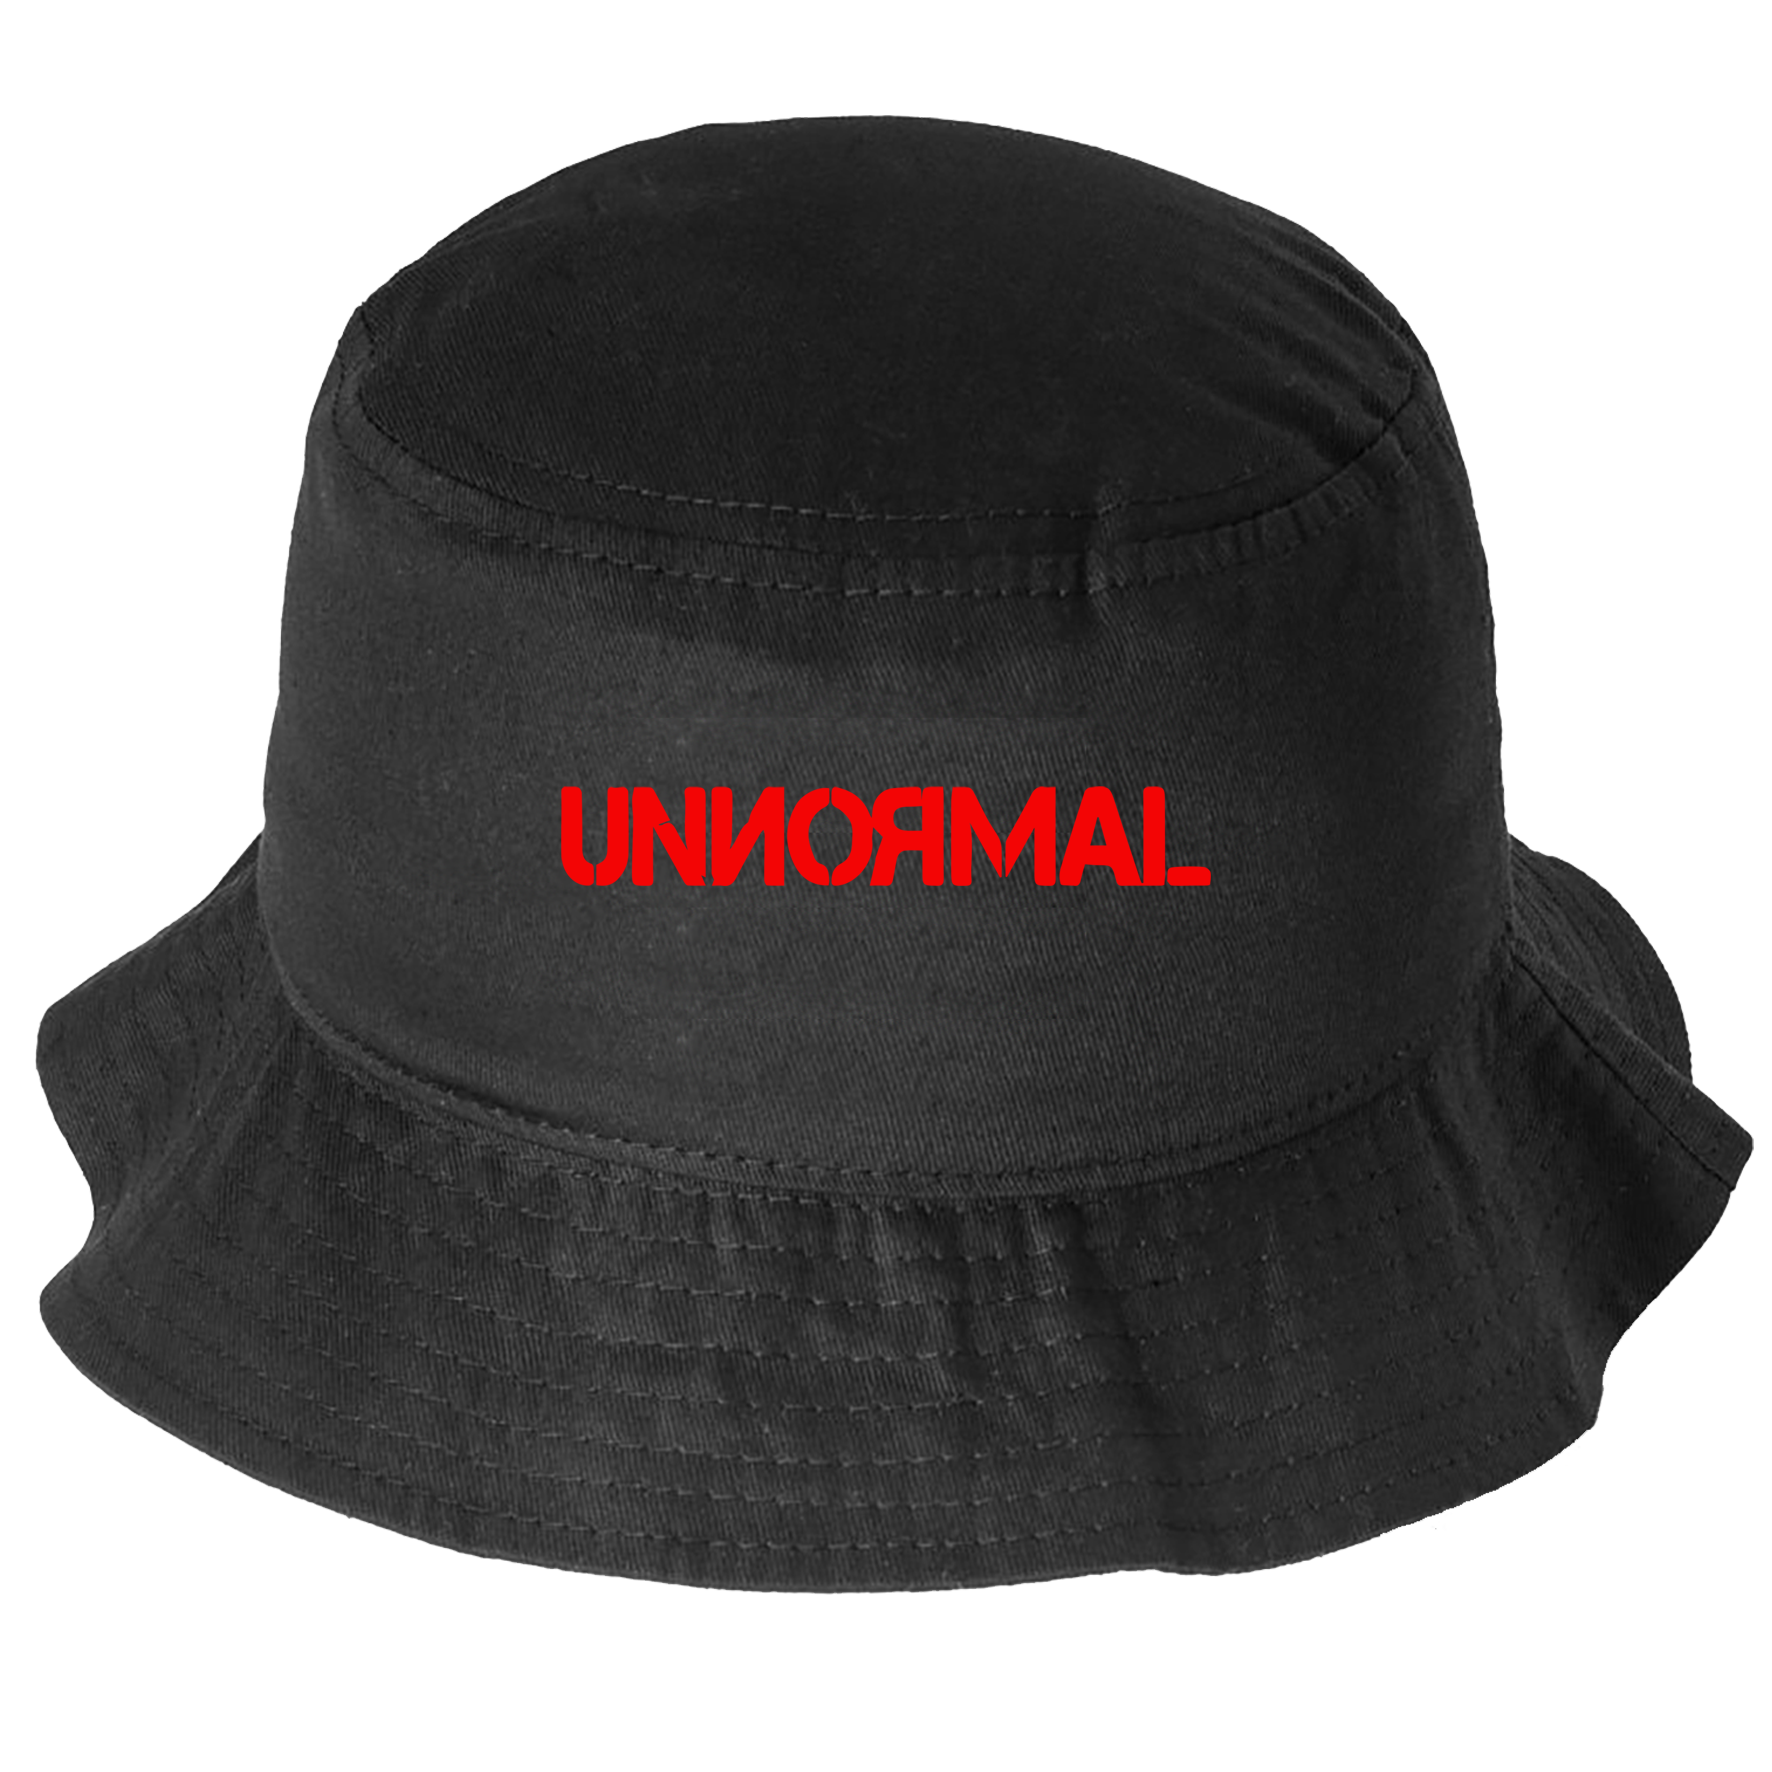 UNNORMAL - Logo - Feierhut [schwarz]